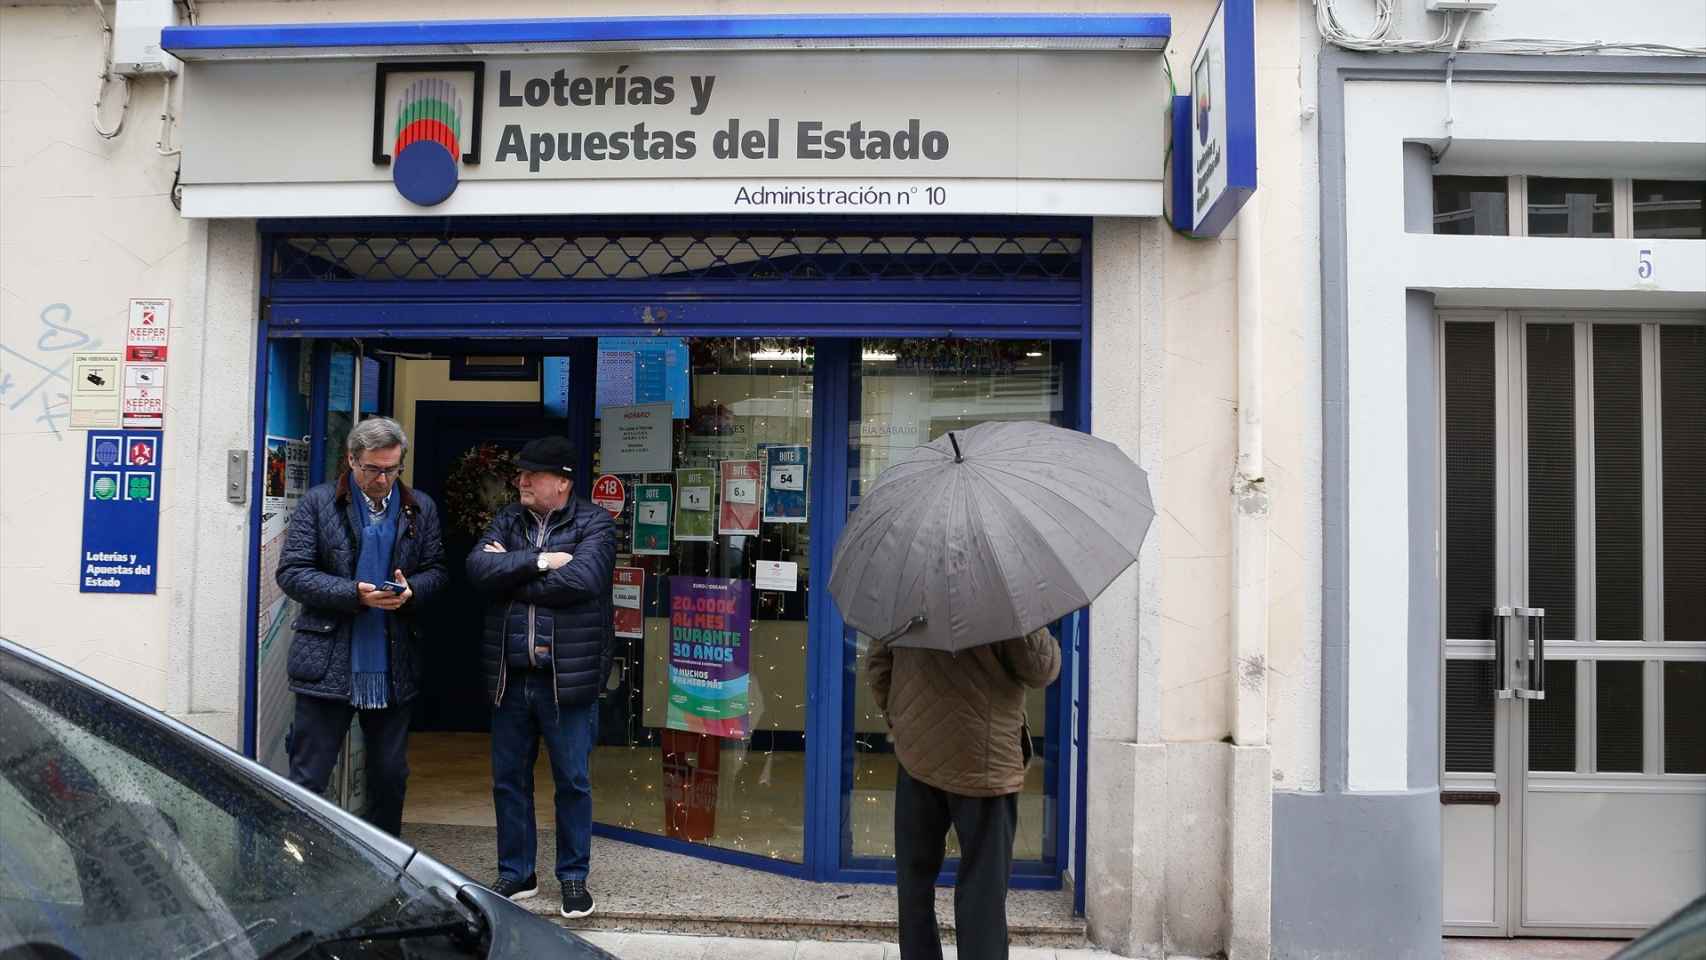 Vista de la fachada del local de Loterías y Apuestas del Estado de Guillermo Rodríguez, en Lugo, galicia, asaltado el 4 de enero.